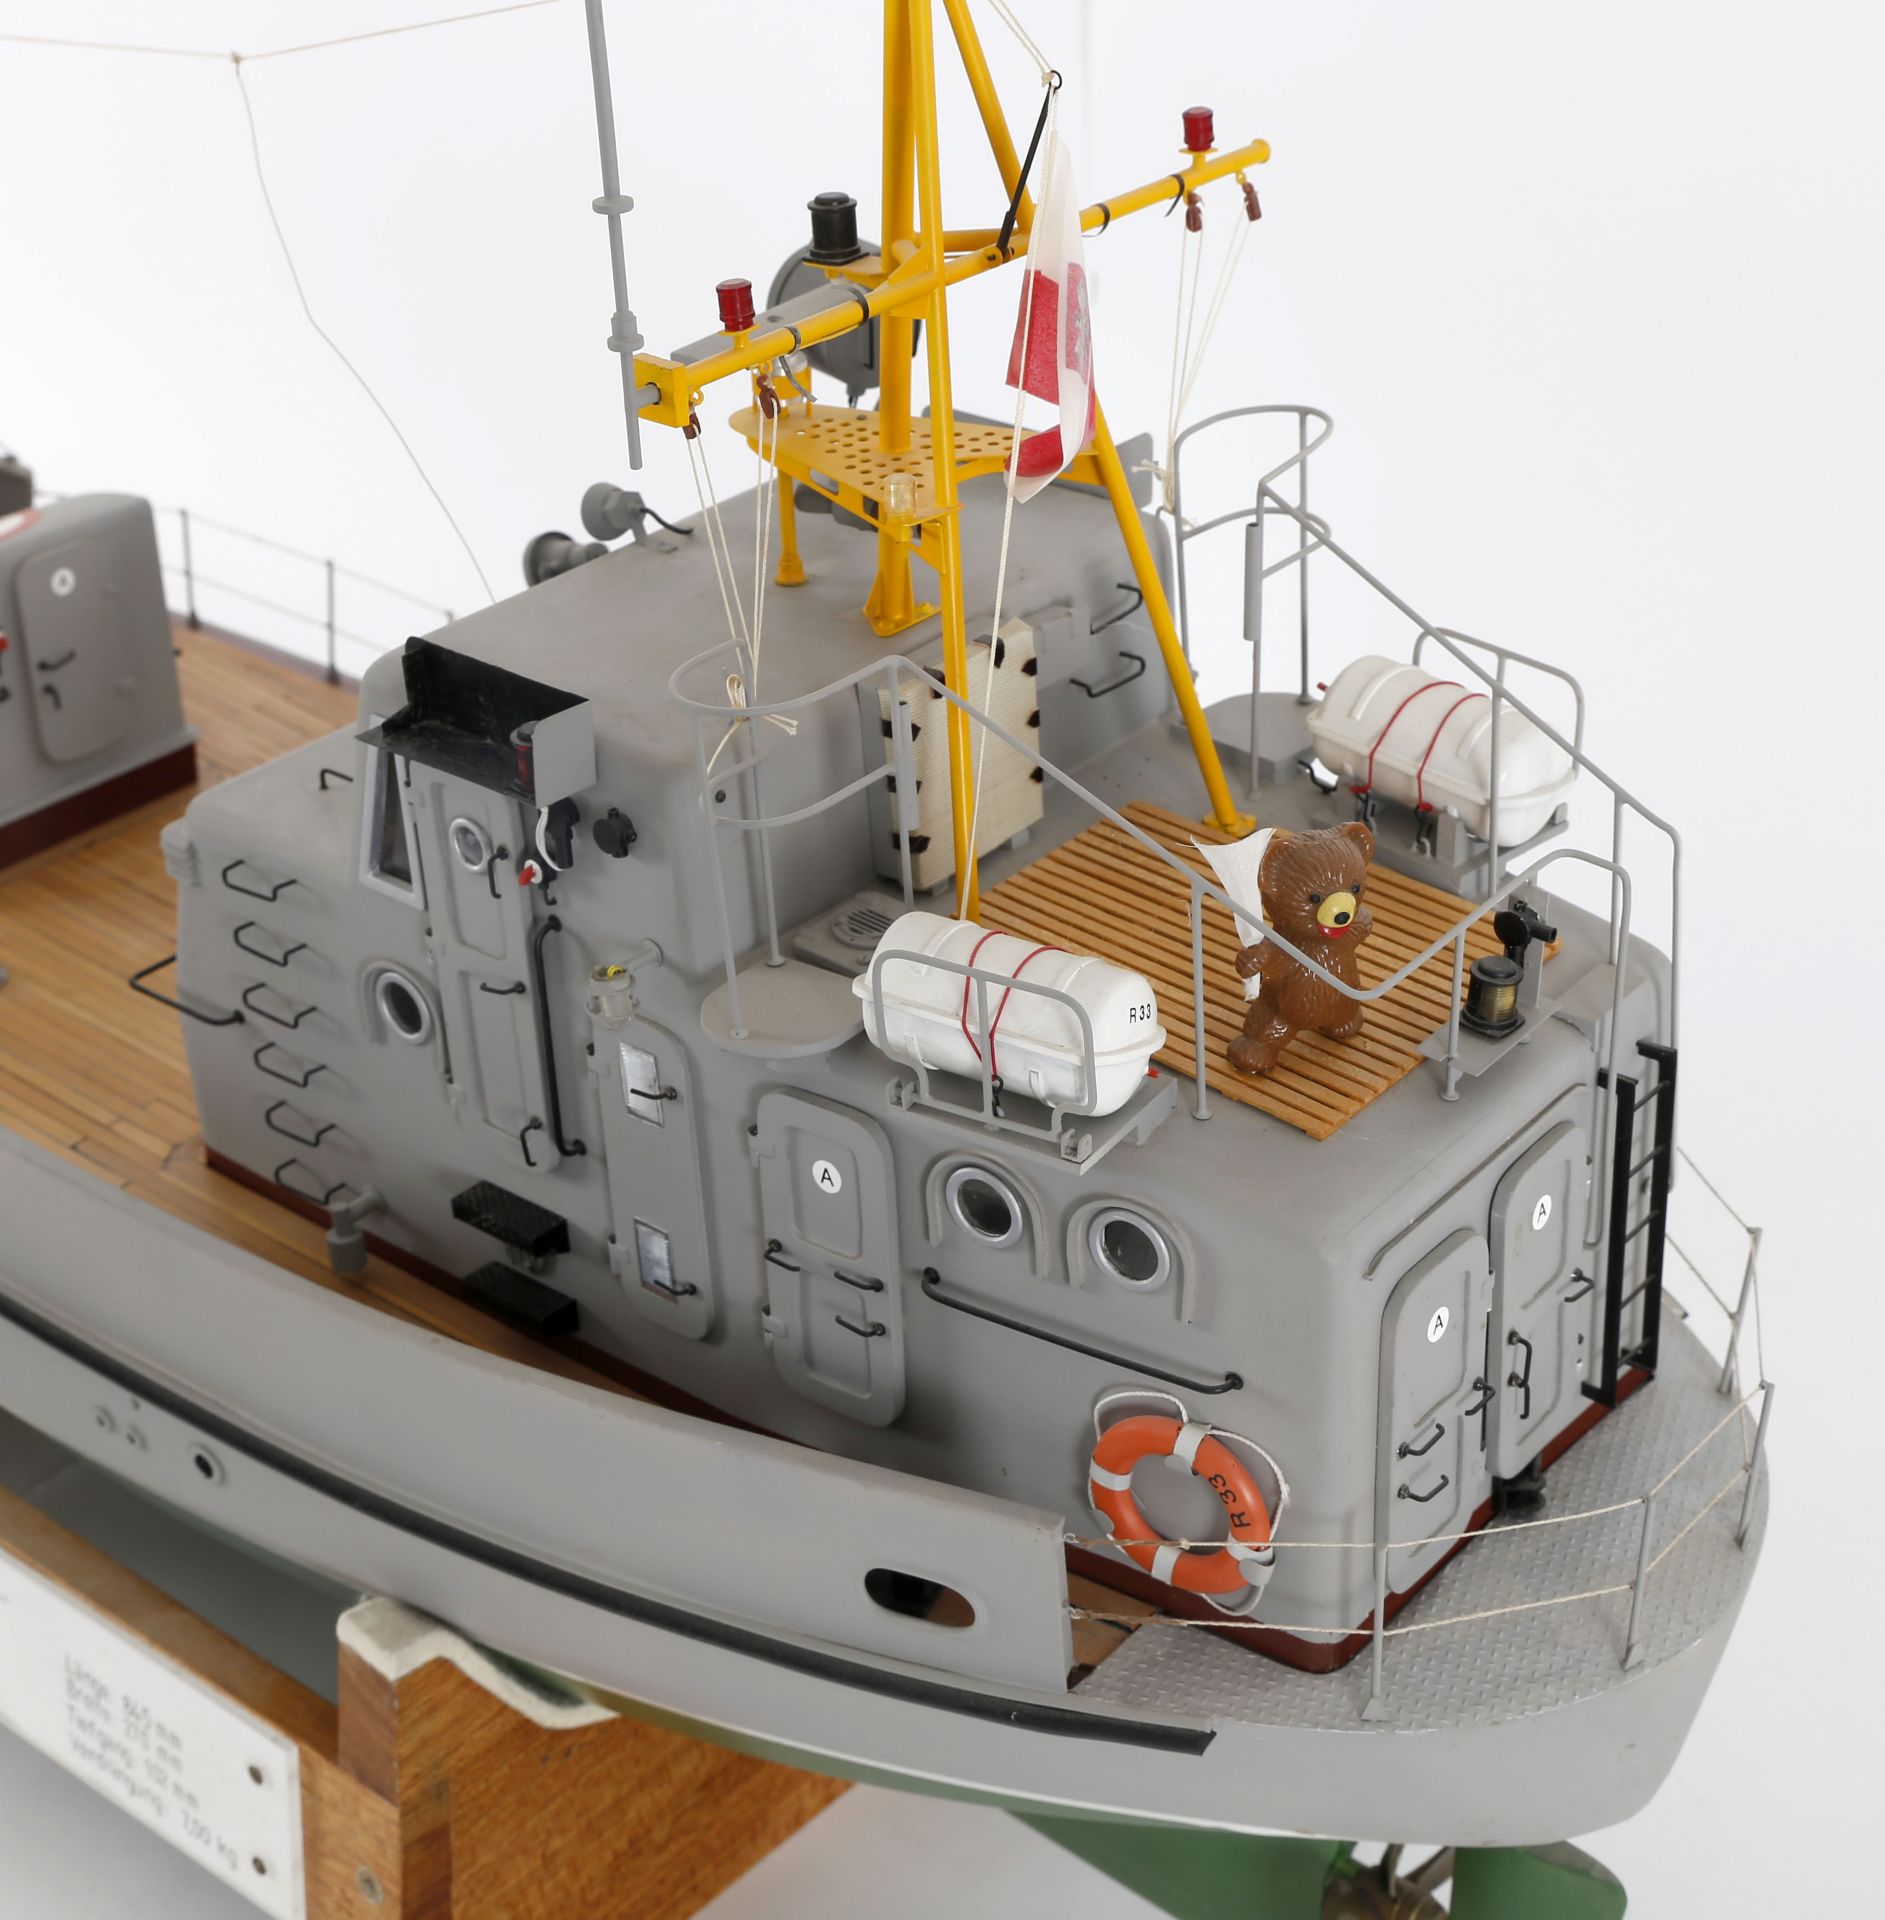 Modell des polnischen Rettungsbootes 'R 33' - Image 4 of 7